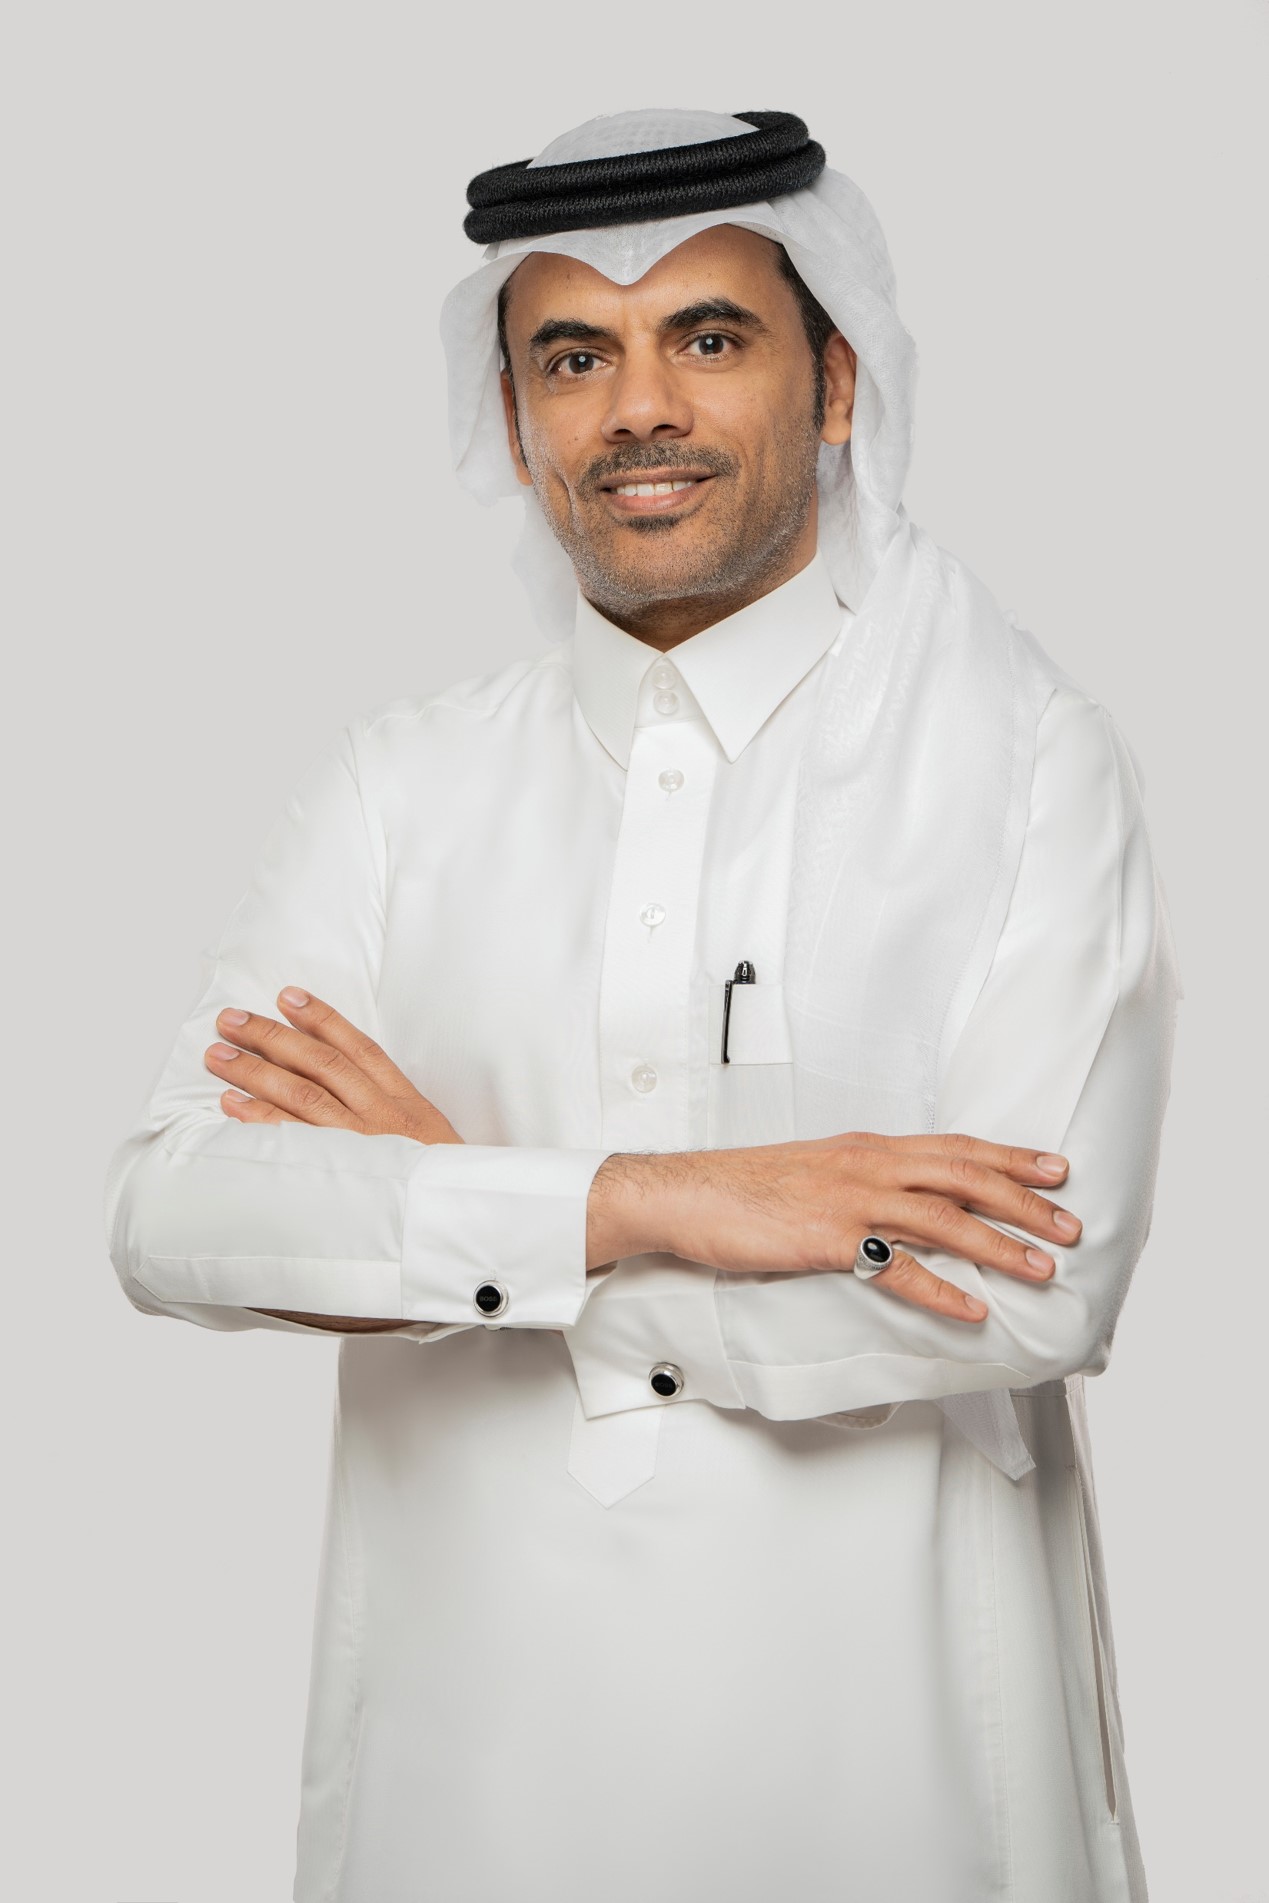 Faisal AlHarbi